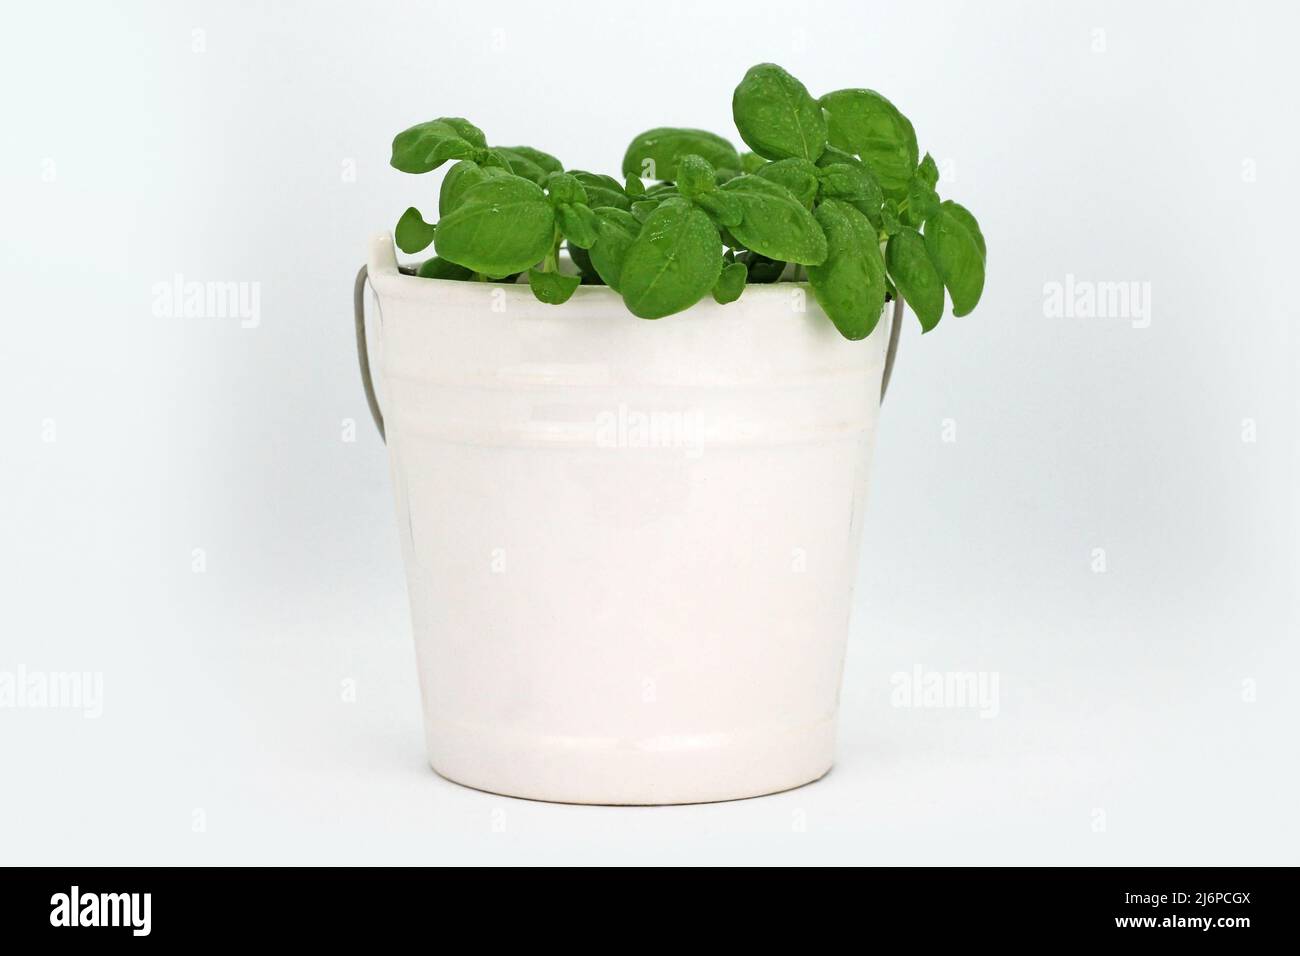 Planta de albahaca en olla de cerámica sobre fondo blanco. Imagen de estudio. Foto de stock